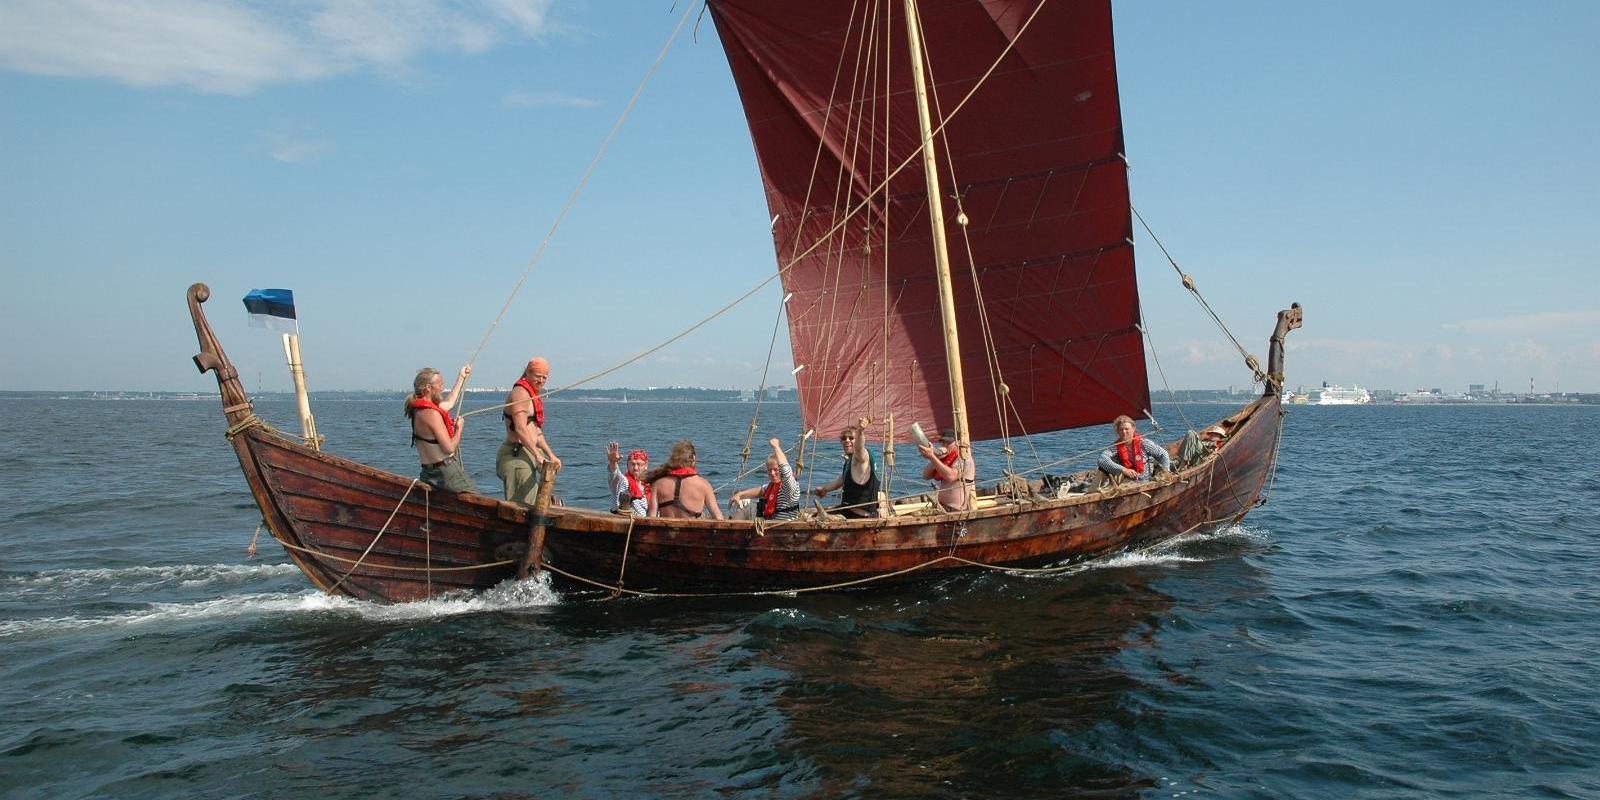 Voyages on the Viking ship "Turm"